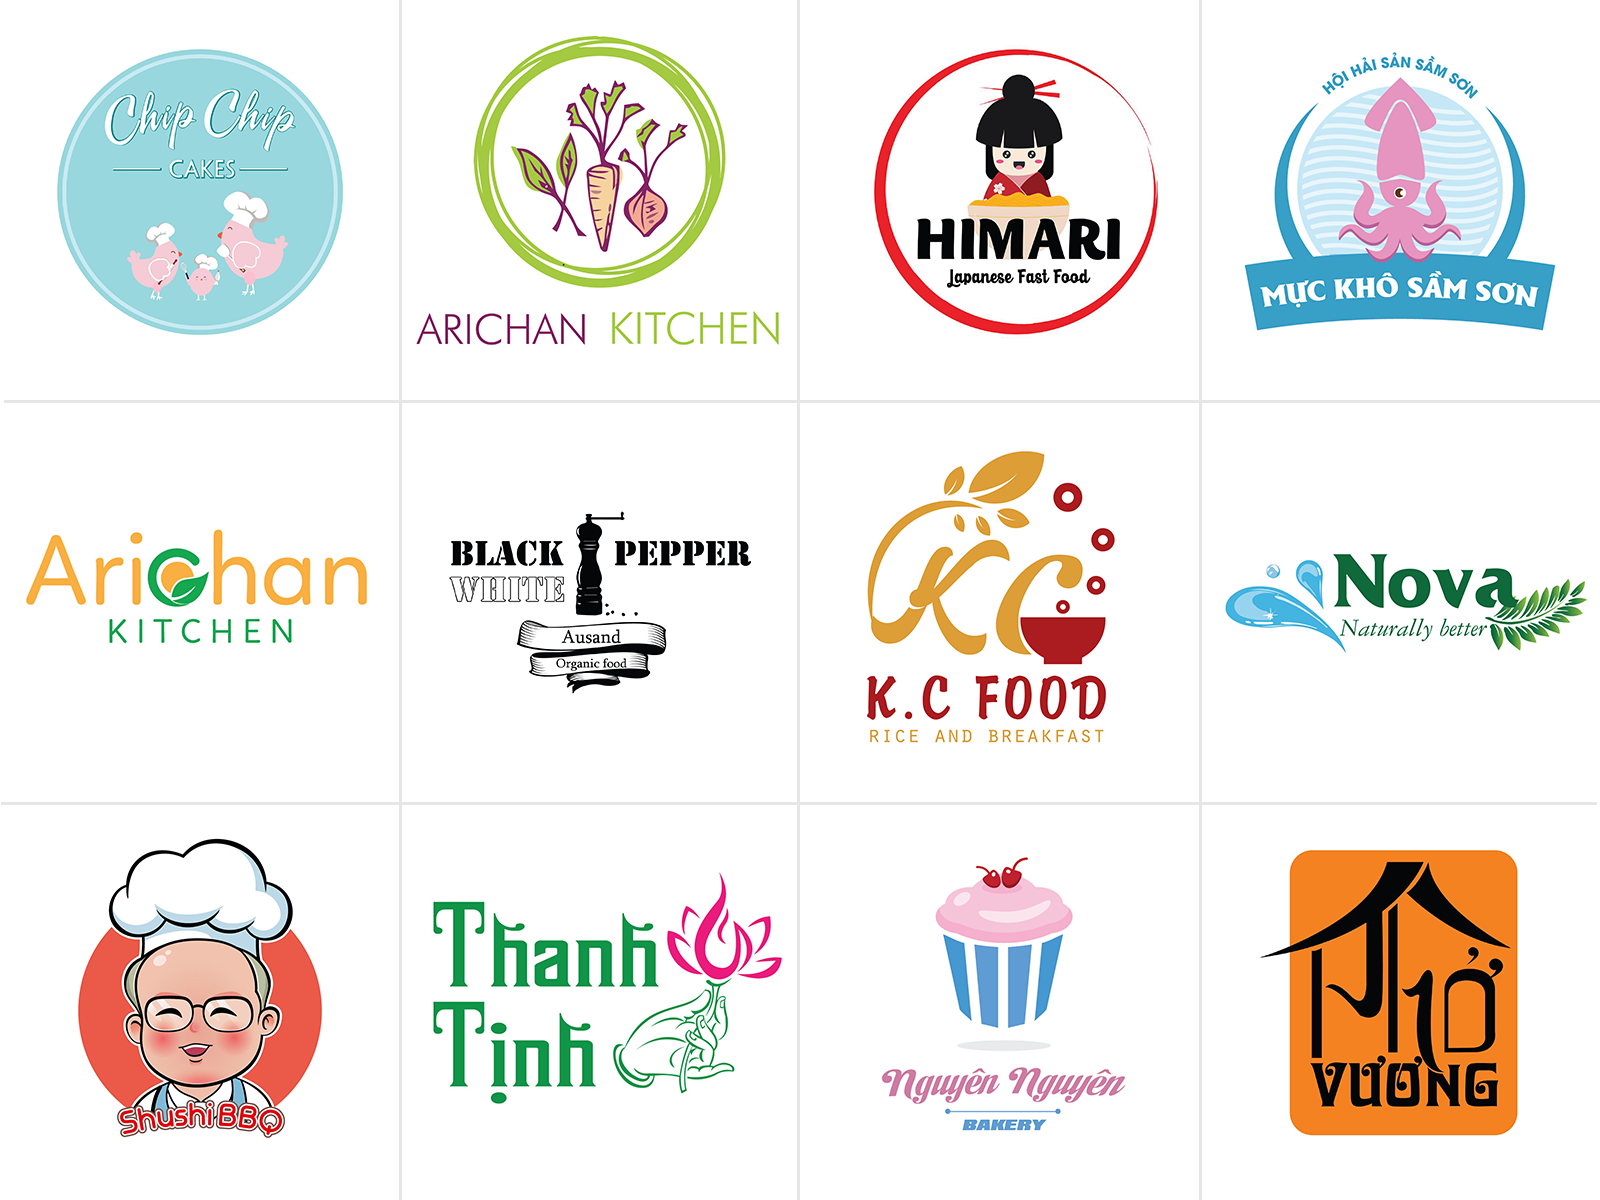 Thiết kế logo thực phẩm - khi nhìn thấy logo thực phẩm, bạn đã cảm nhận được độ sáng tạo và thể hiện độ chuyên nghiệp chưa? Logo của thực phẩm chính là yếu tố quyết định giúp cảm hứng mua sắm cho khách hàng. Xem qua bức ảnh với thiết kế logo thực phẩm của chúng tôi, bạn sẽ bất ngờ trước sự tinh tế và sáng tạo của nó!